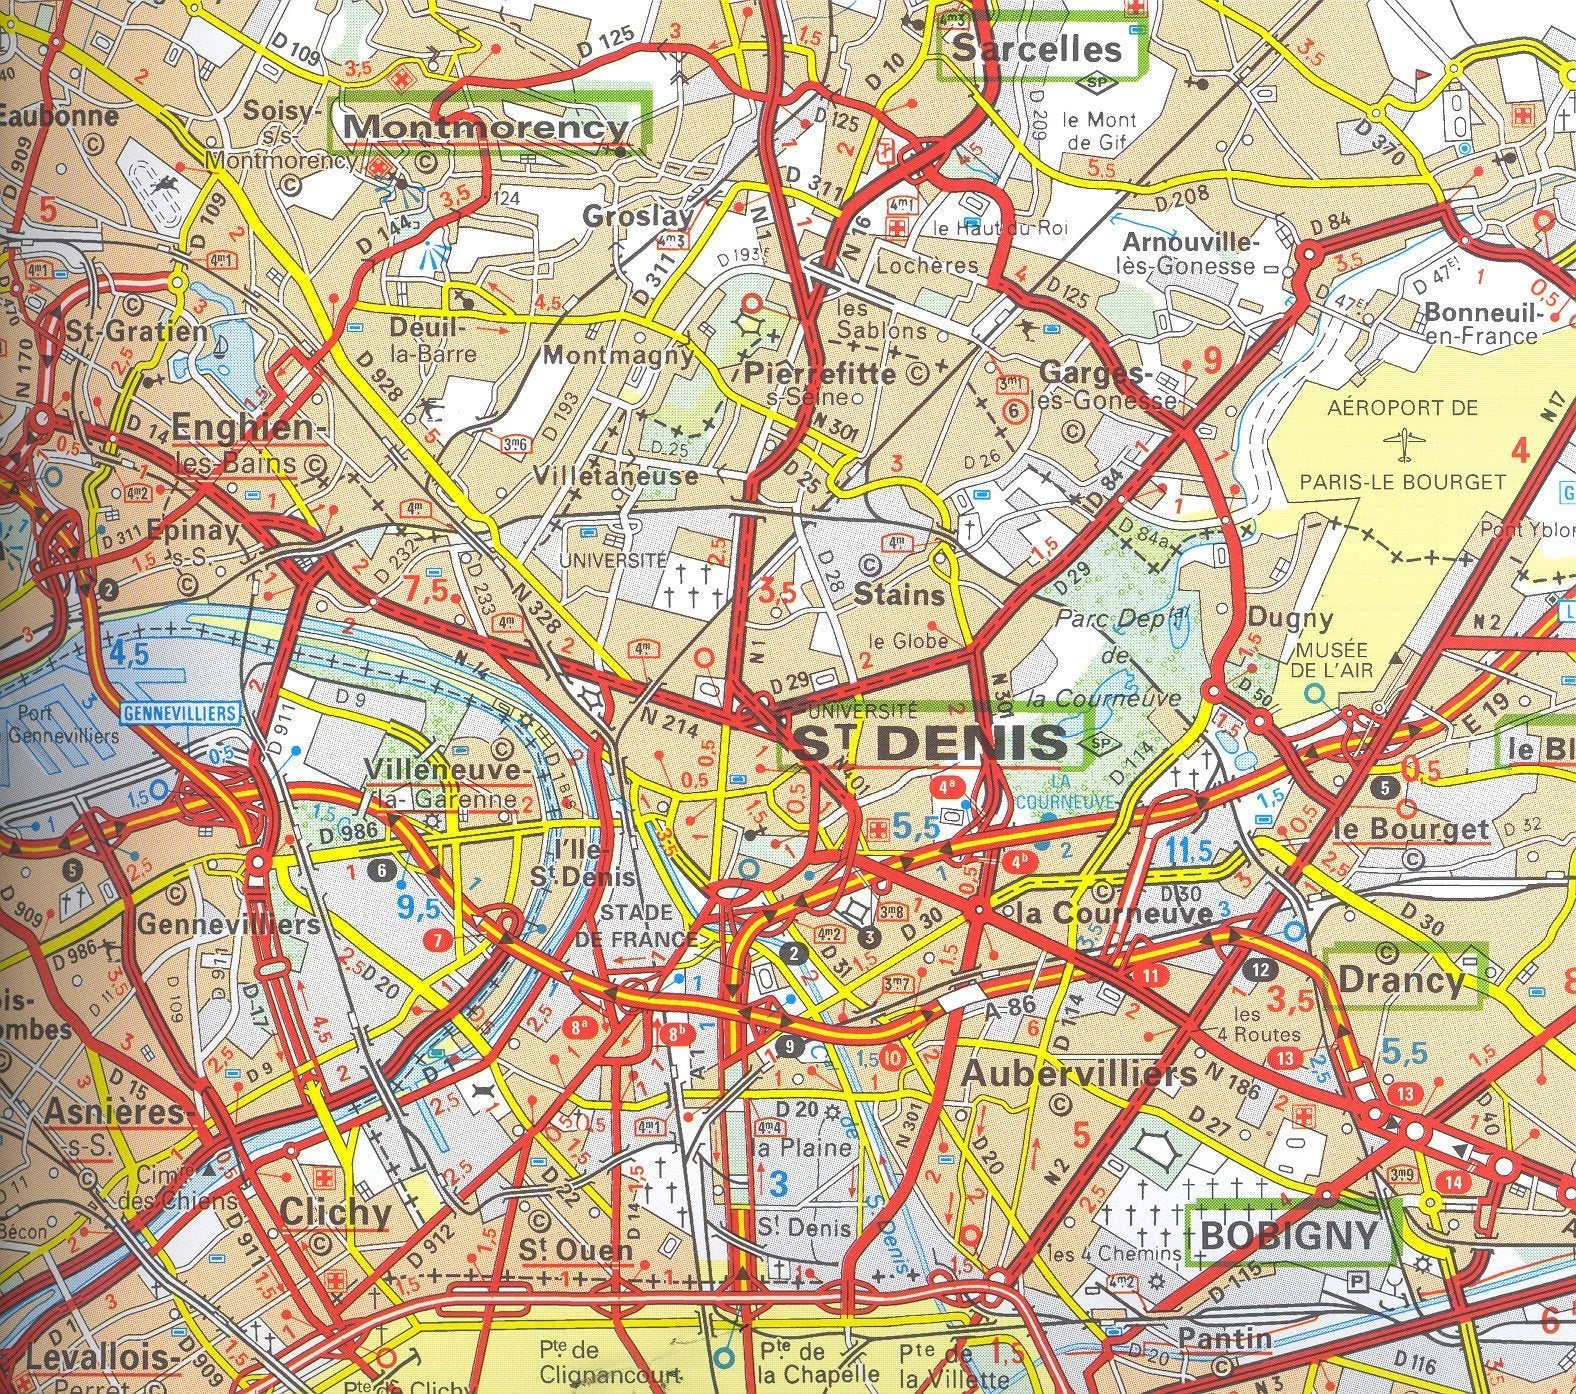 Wall Maps - Paris Environs Wall Map - Paris Map